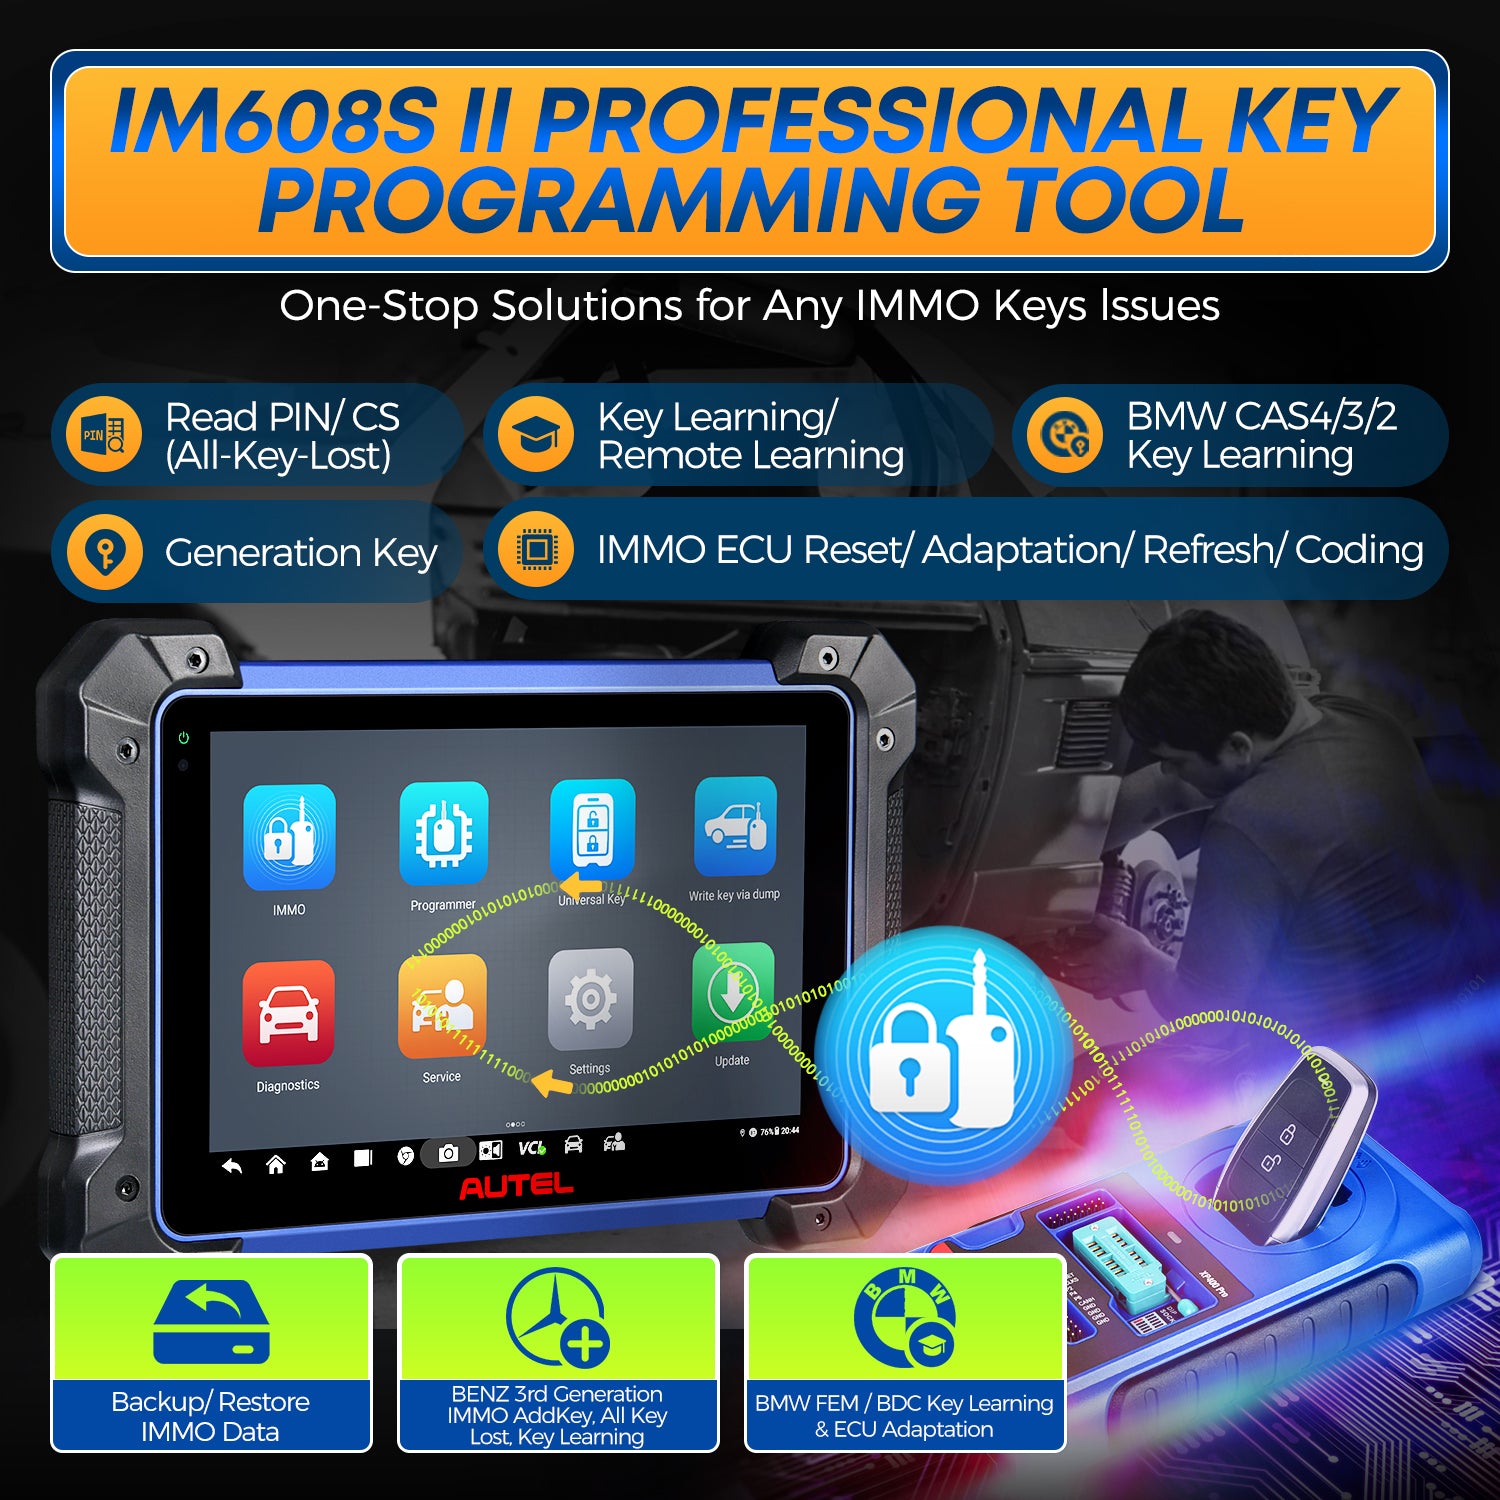 im608s ii professional key programming tool